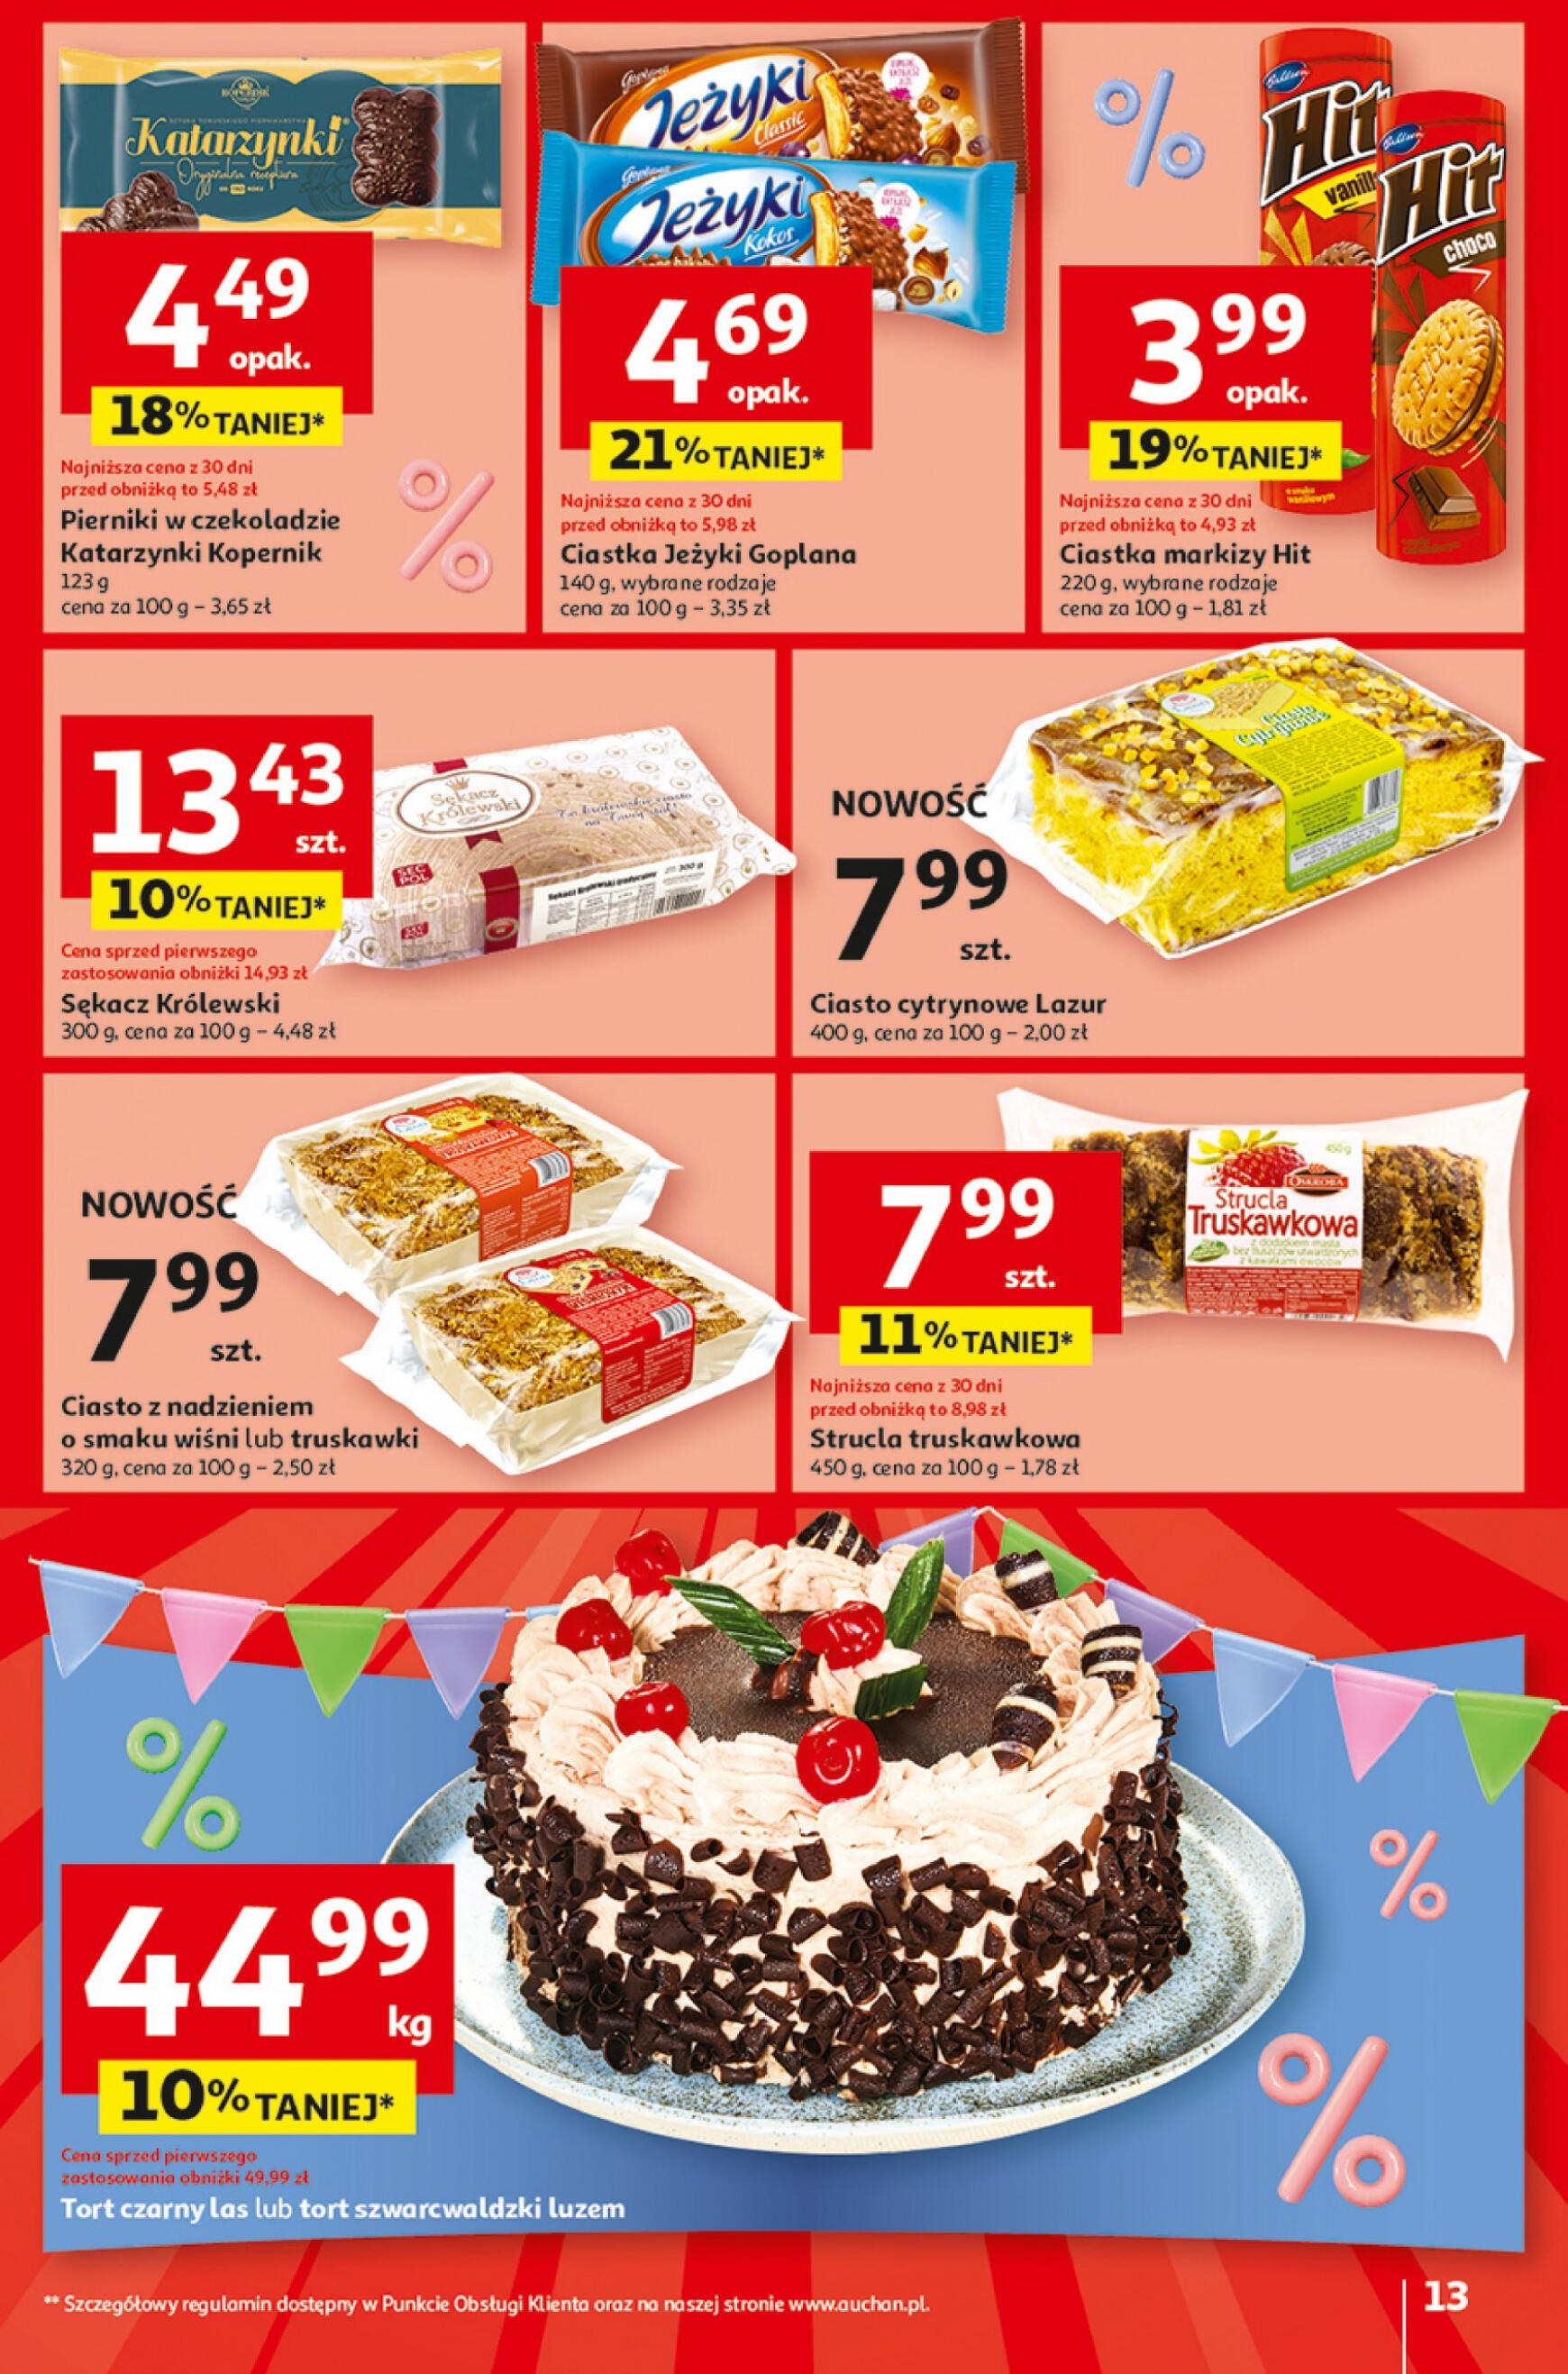 auchan - Hipermarket Auchan - Gazetka Jeszcze taniej na urodziny gazetka aktualna ważna od 25.04. - 30.04. - page: 13